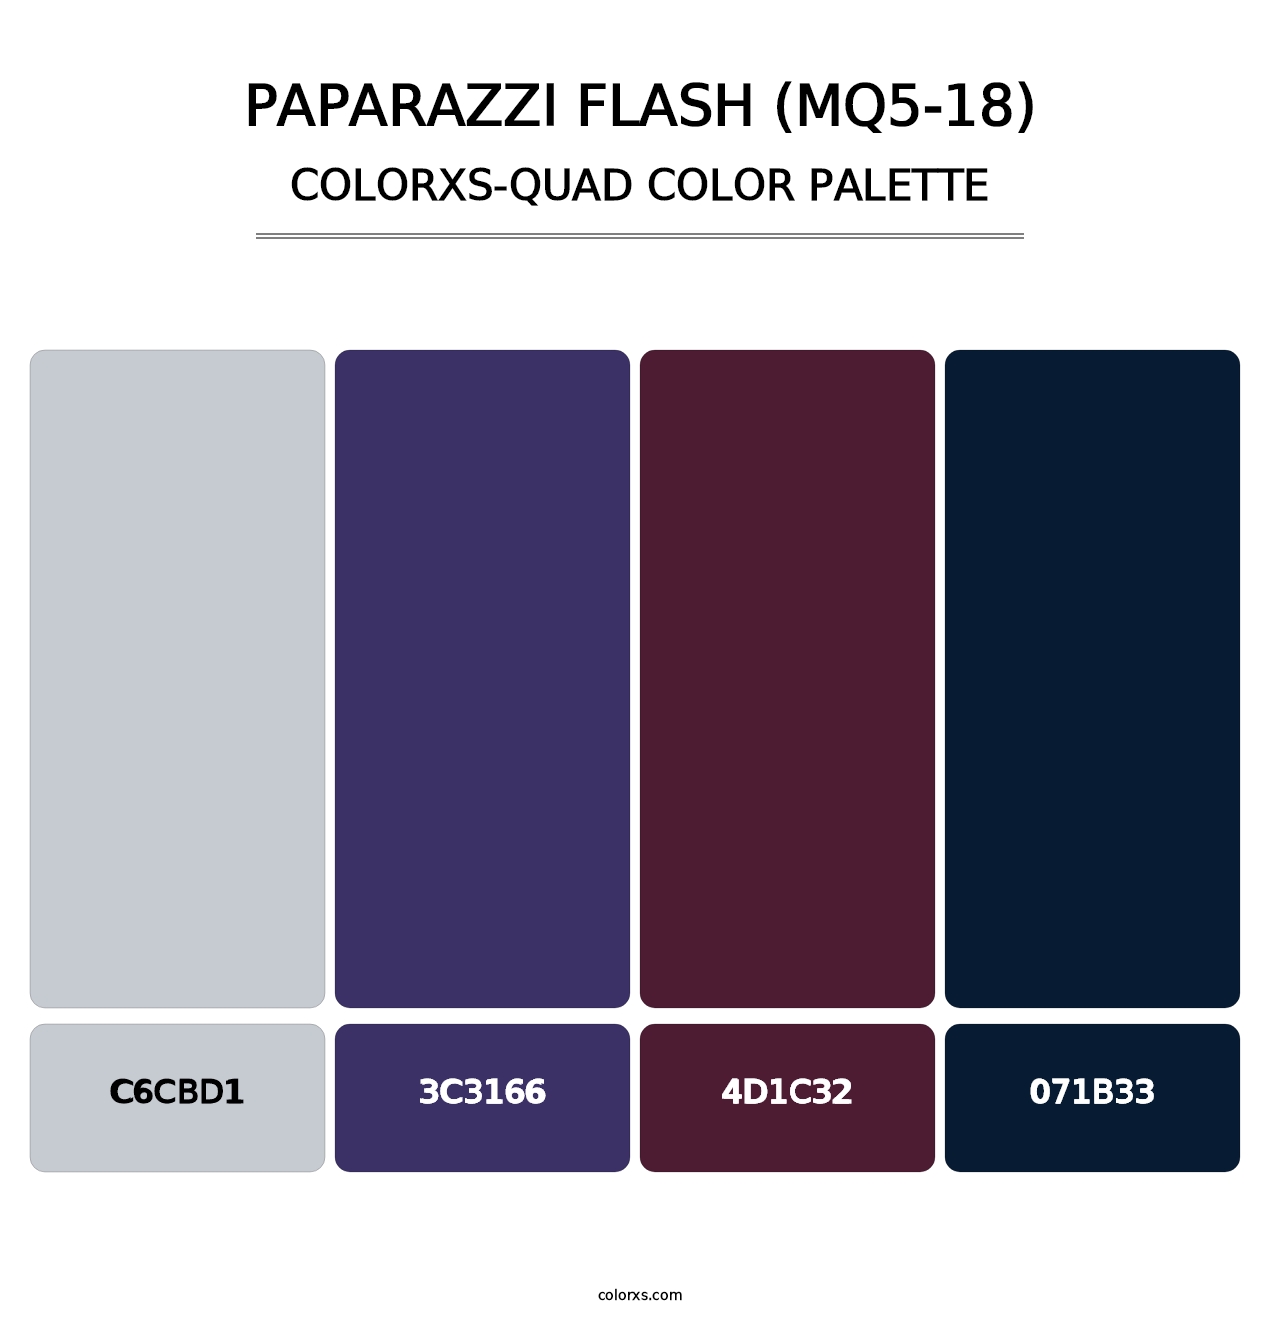 Paparazzi Flash (MQ5-18) - Colorxs Quad Palette